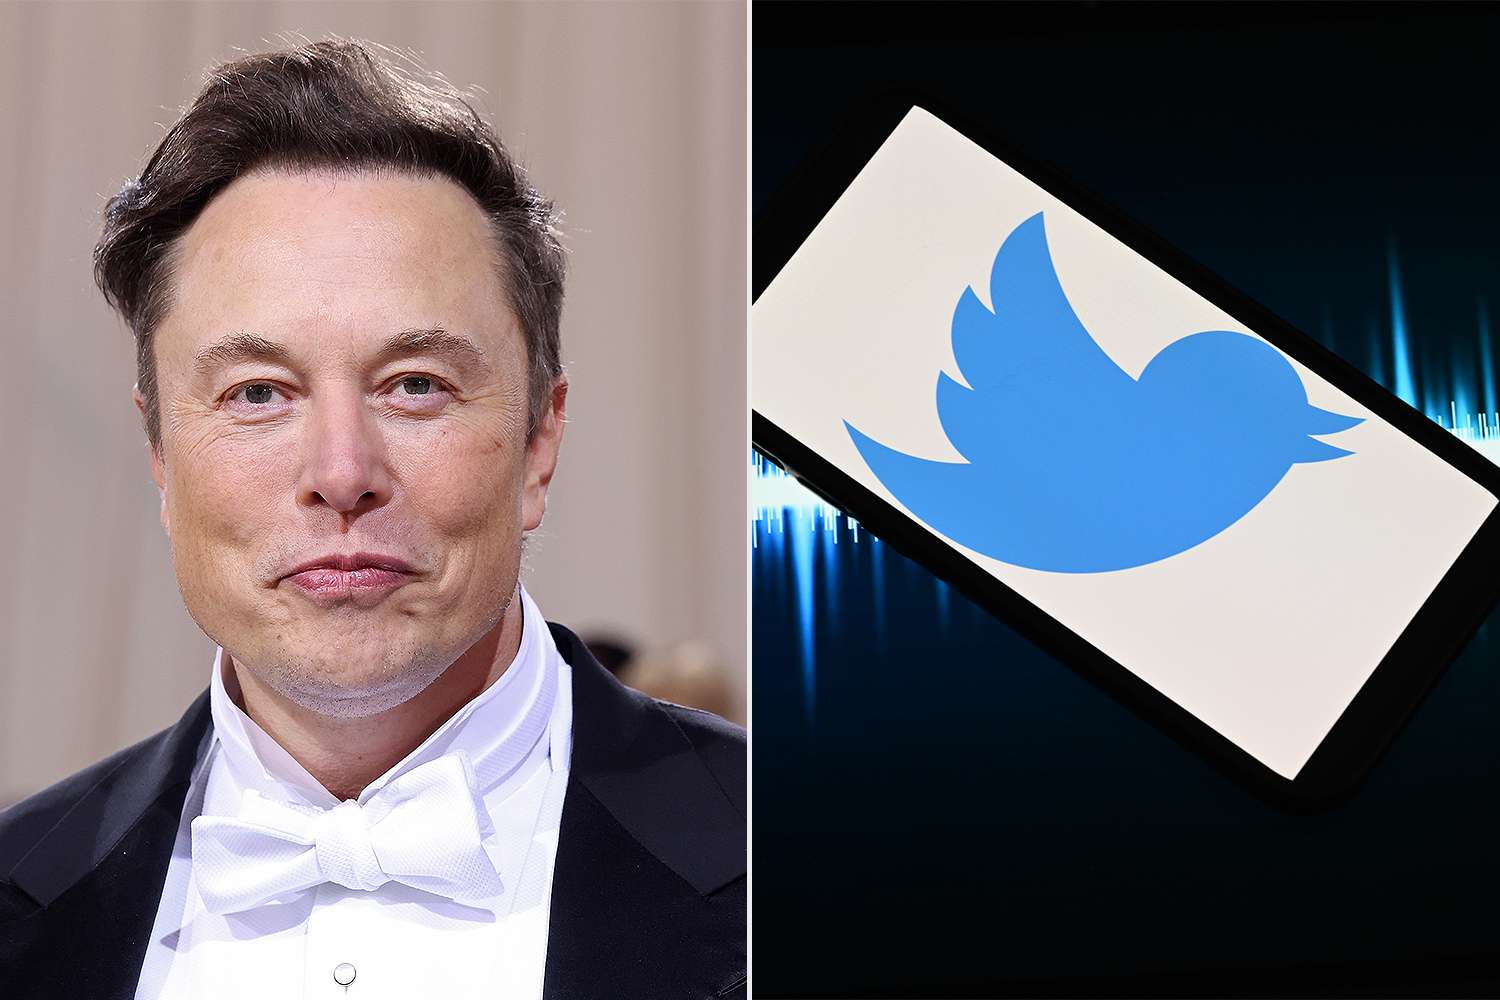 Adeus, pássaro! Elon Musk vai mudar logotipo do Twitter